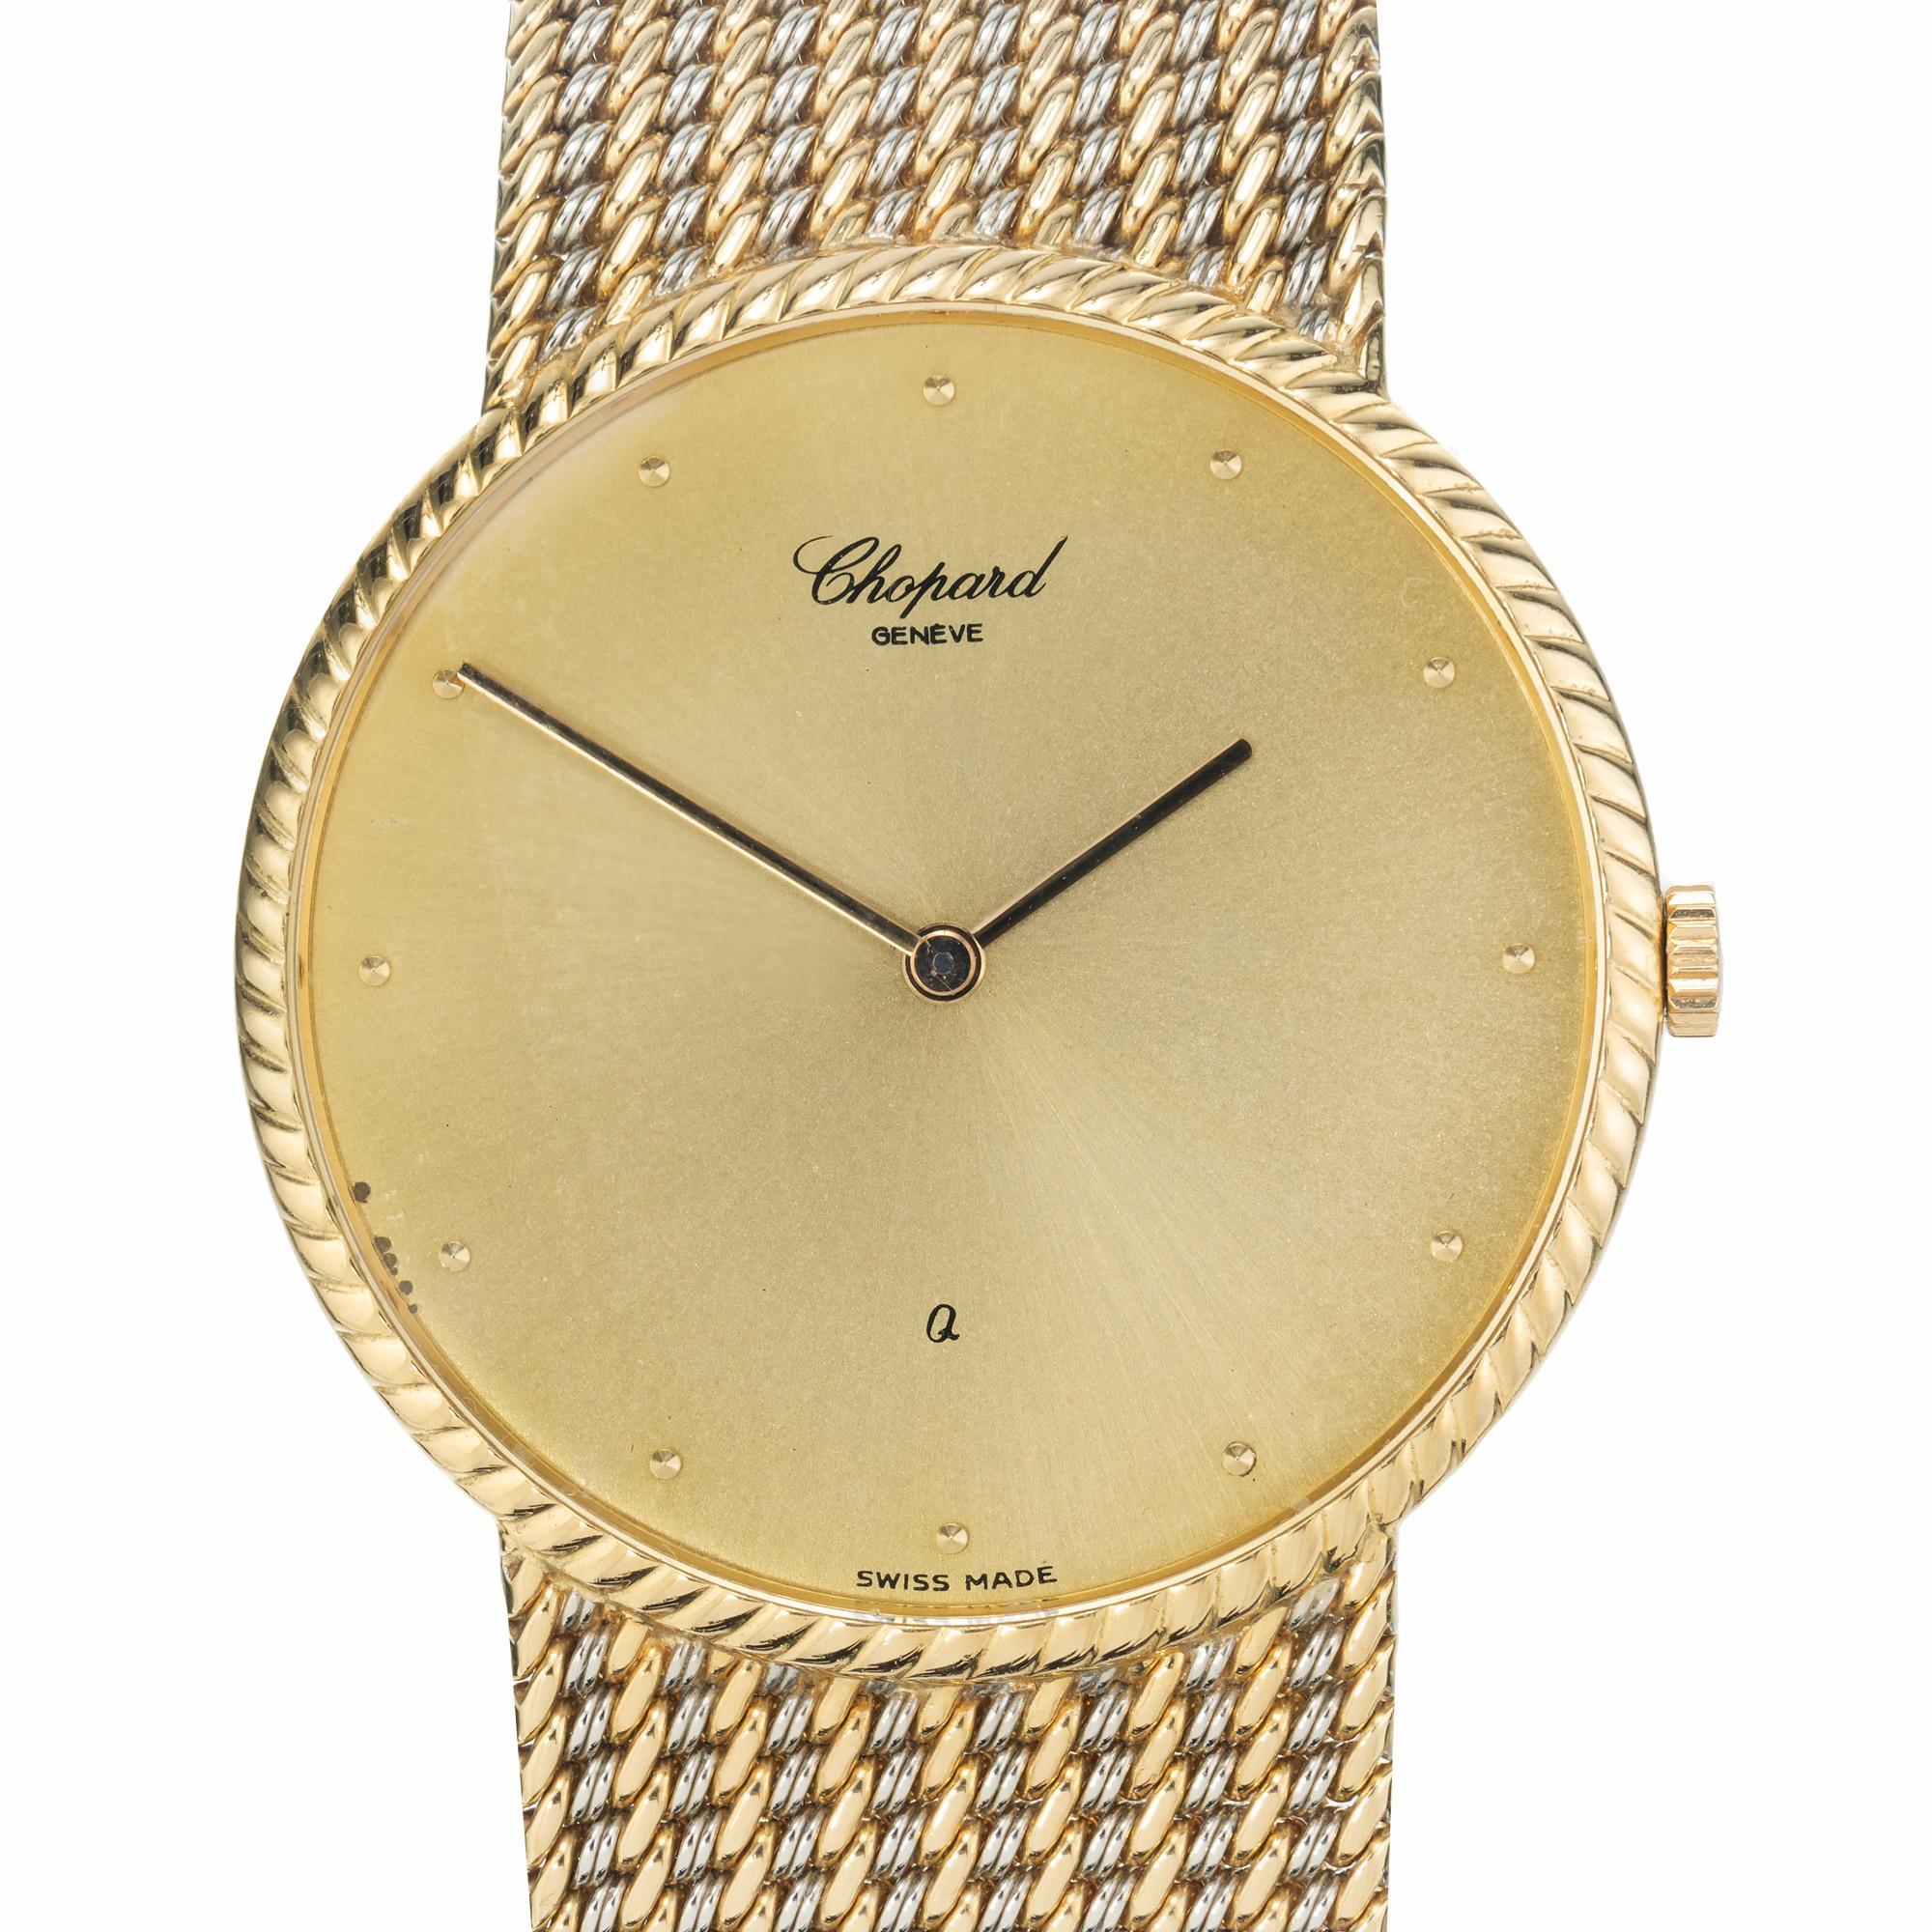 Chopard Armbanduhr aus 18 Karat Gelb- und Weißgold, ca. 1980er Jahre. Chopard Kleid Uhr mit einem integralen Gelb- und Weißgold gewebt Mesh-Armband, Quarzwerk. 7,25 Zoll in der Länge.

18k Gelb- und Weißgold
62,7 Gramm
Länge: ca. 7 1/4 Zoll
Breite